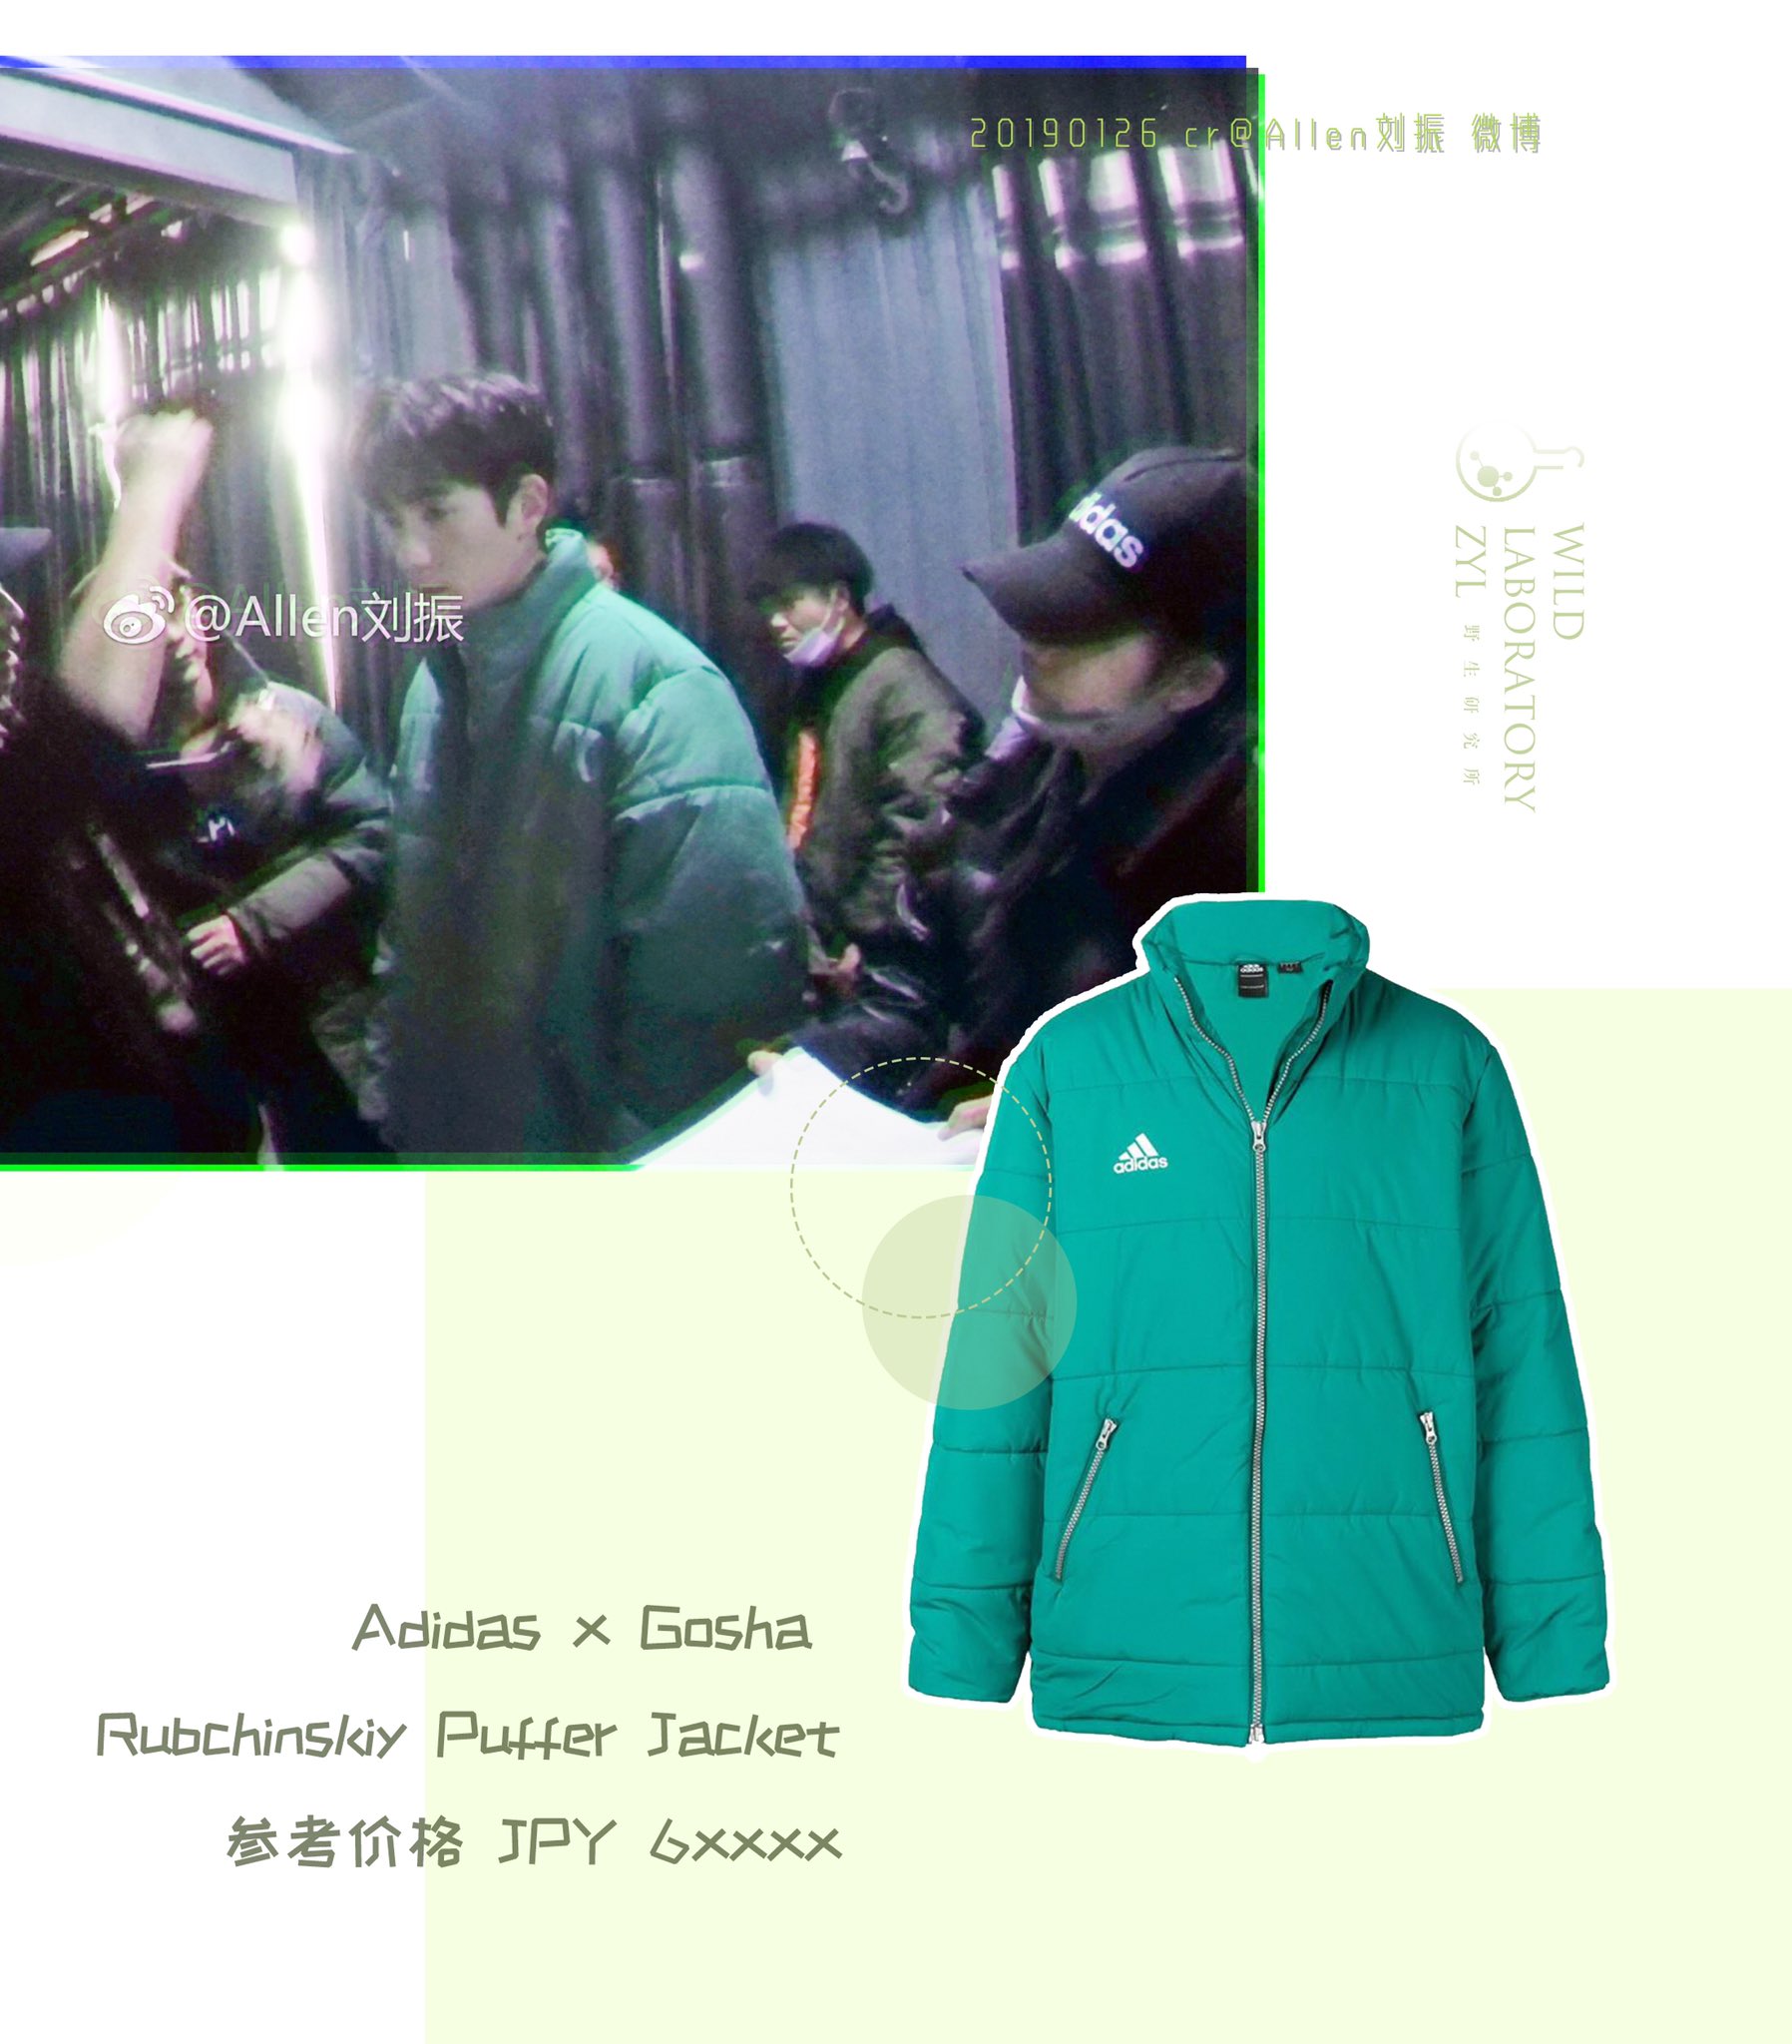 zhuyilong on Twitter: "ZhuYilong | x Gosha Rubchinskiy 😬 The jacket looks this good coz he's the one wearing it. #ZhuYilong #朱一龙 https://t.co/Nz6wNOzphM" Twitter